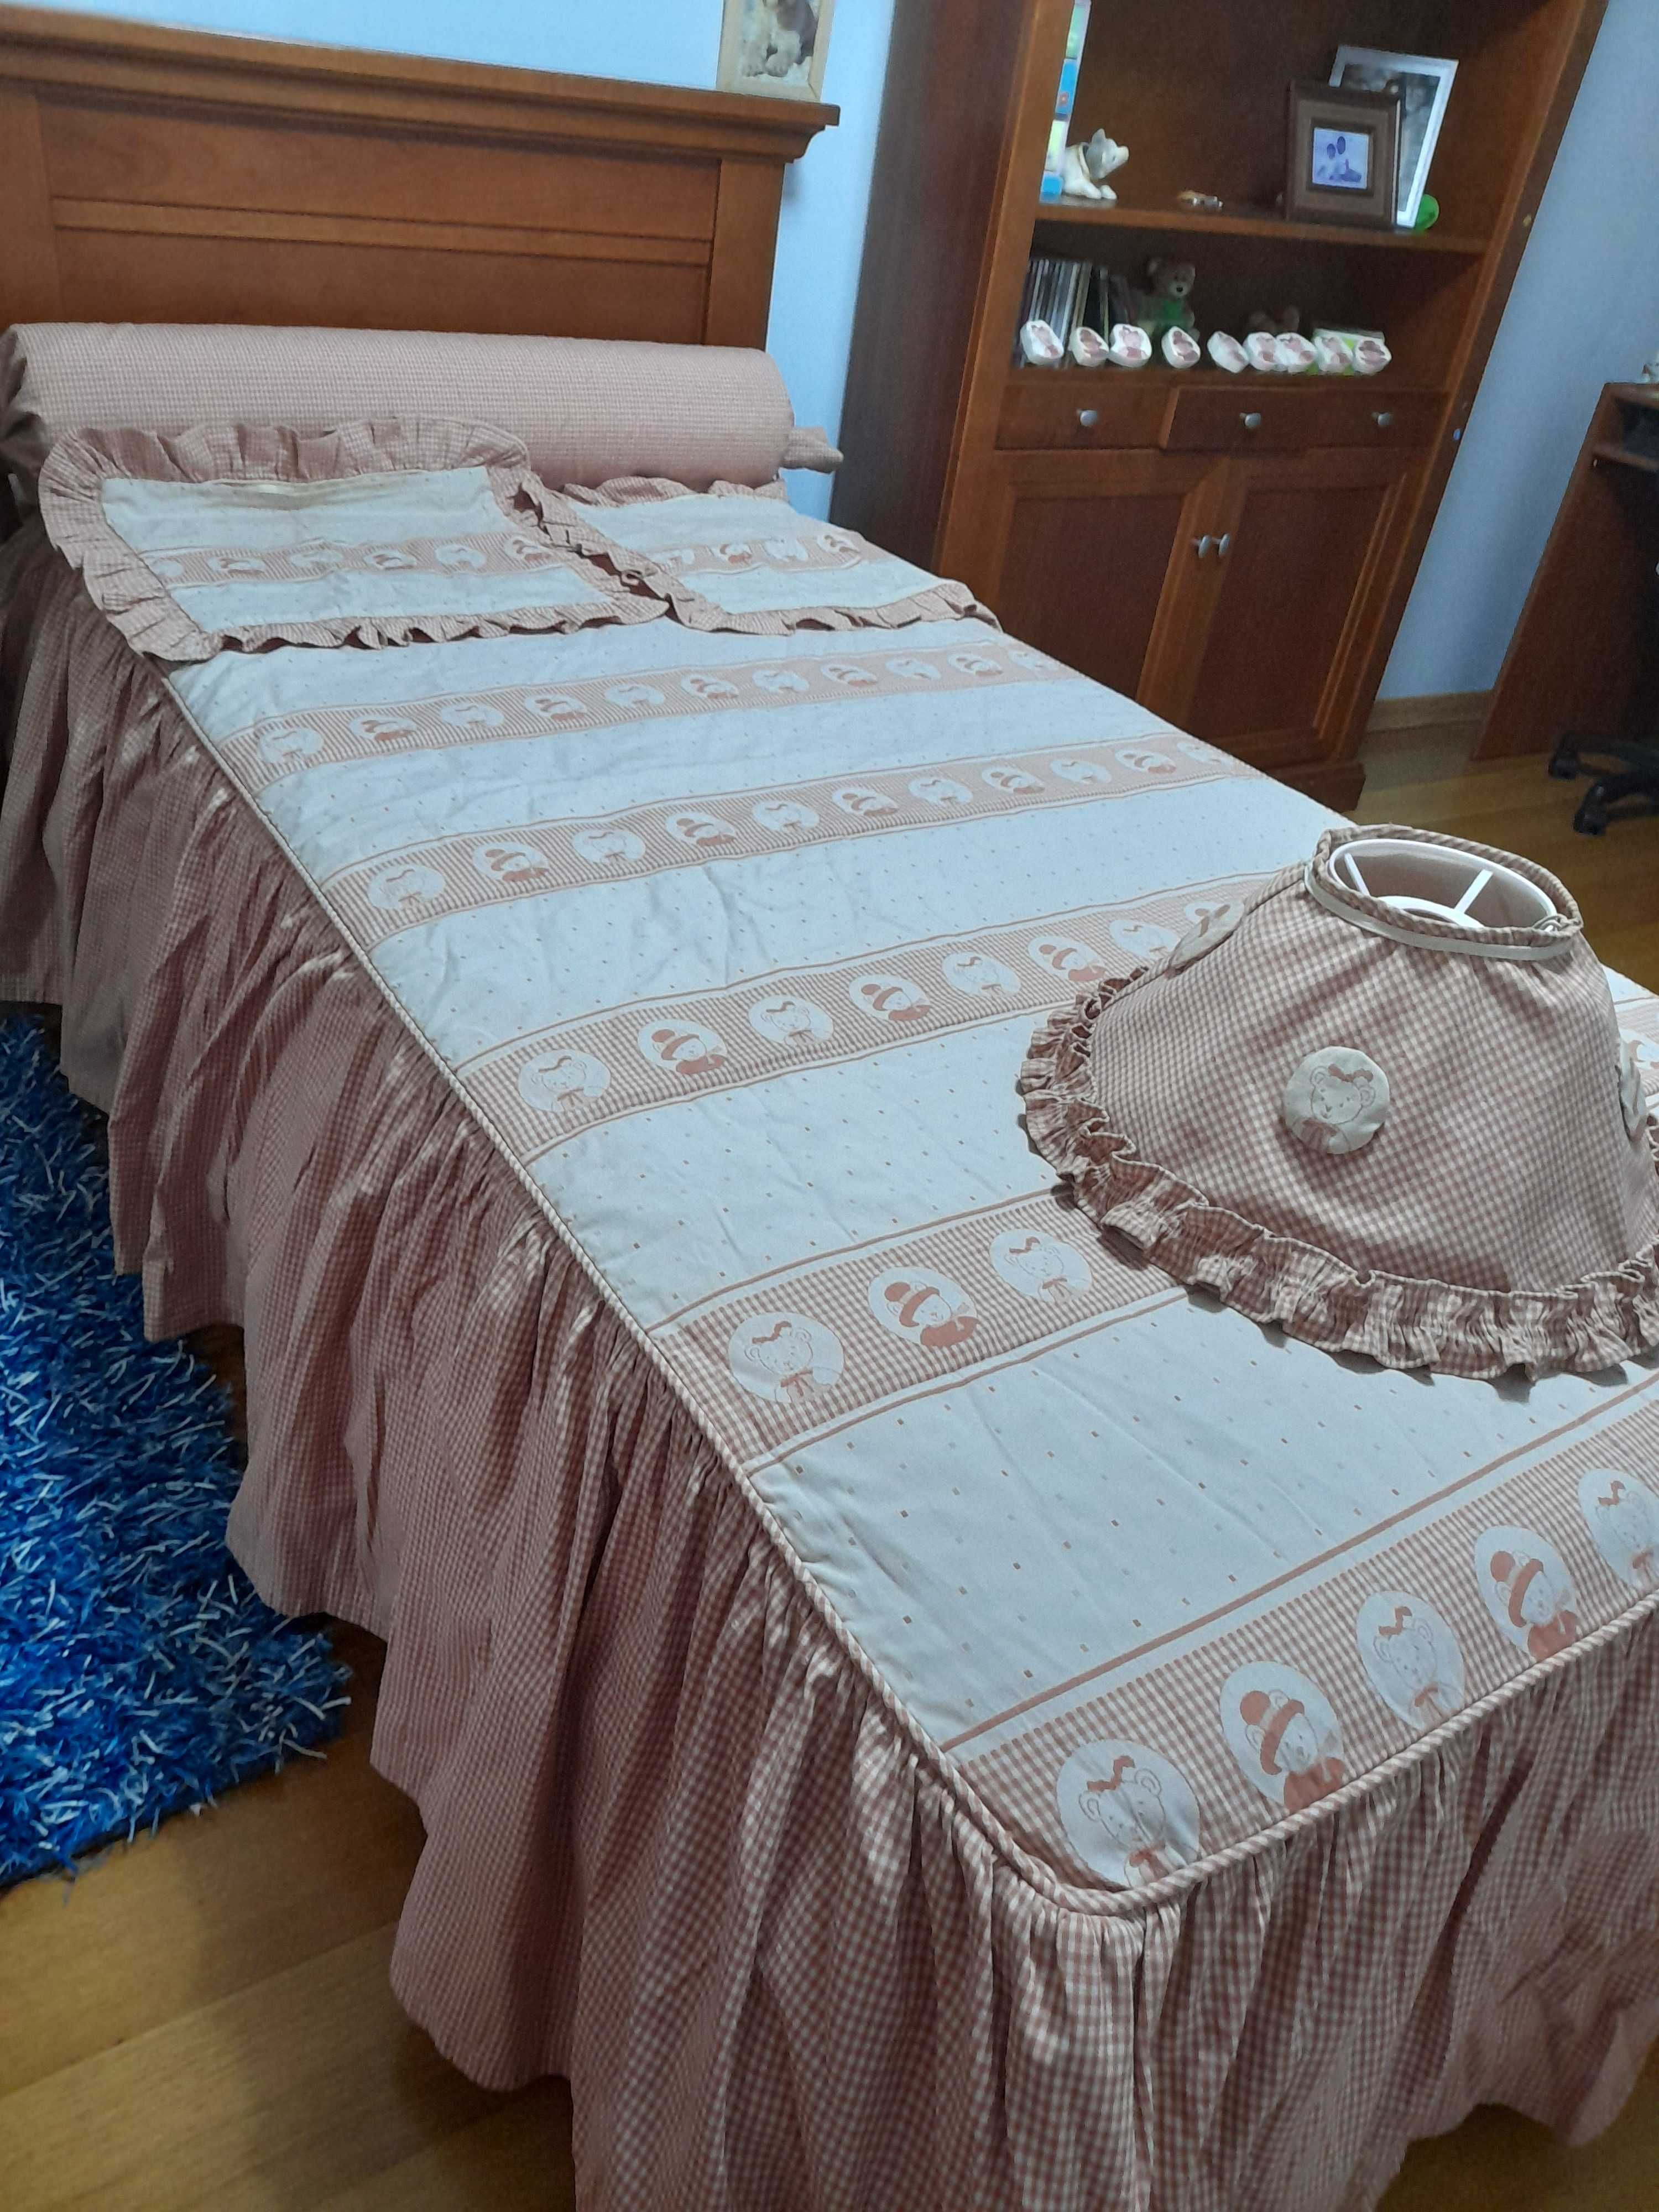 Colcha de cama individual e outros elementos de decoração